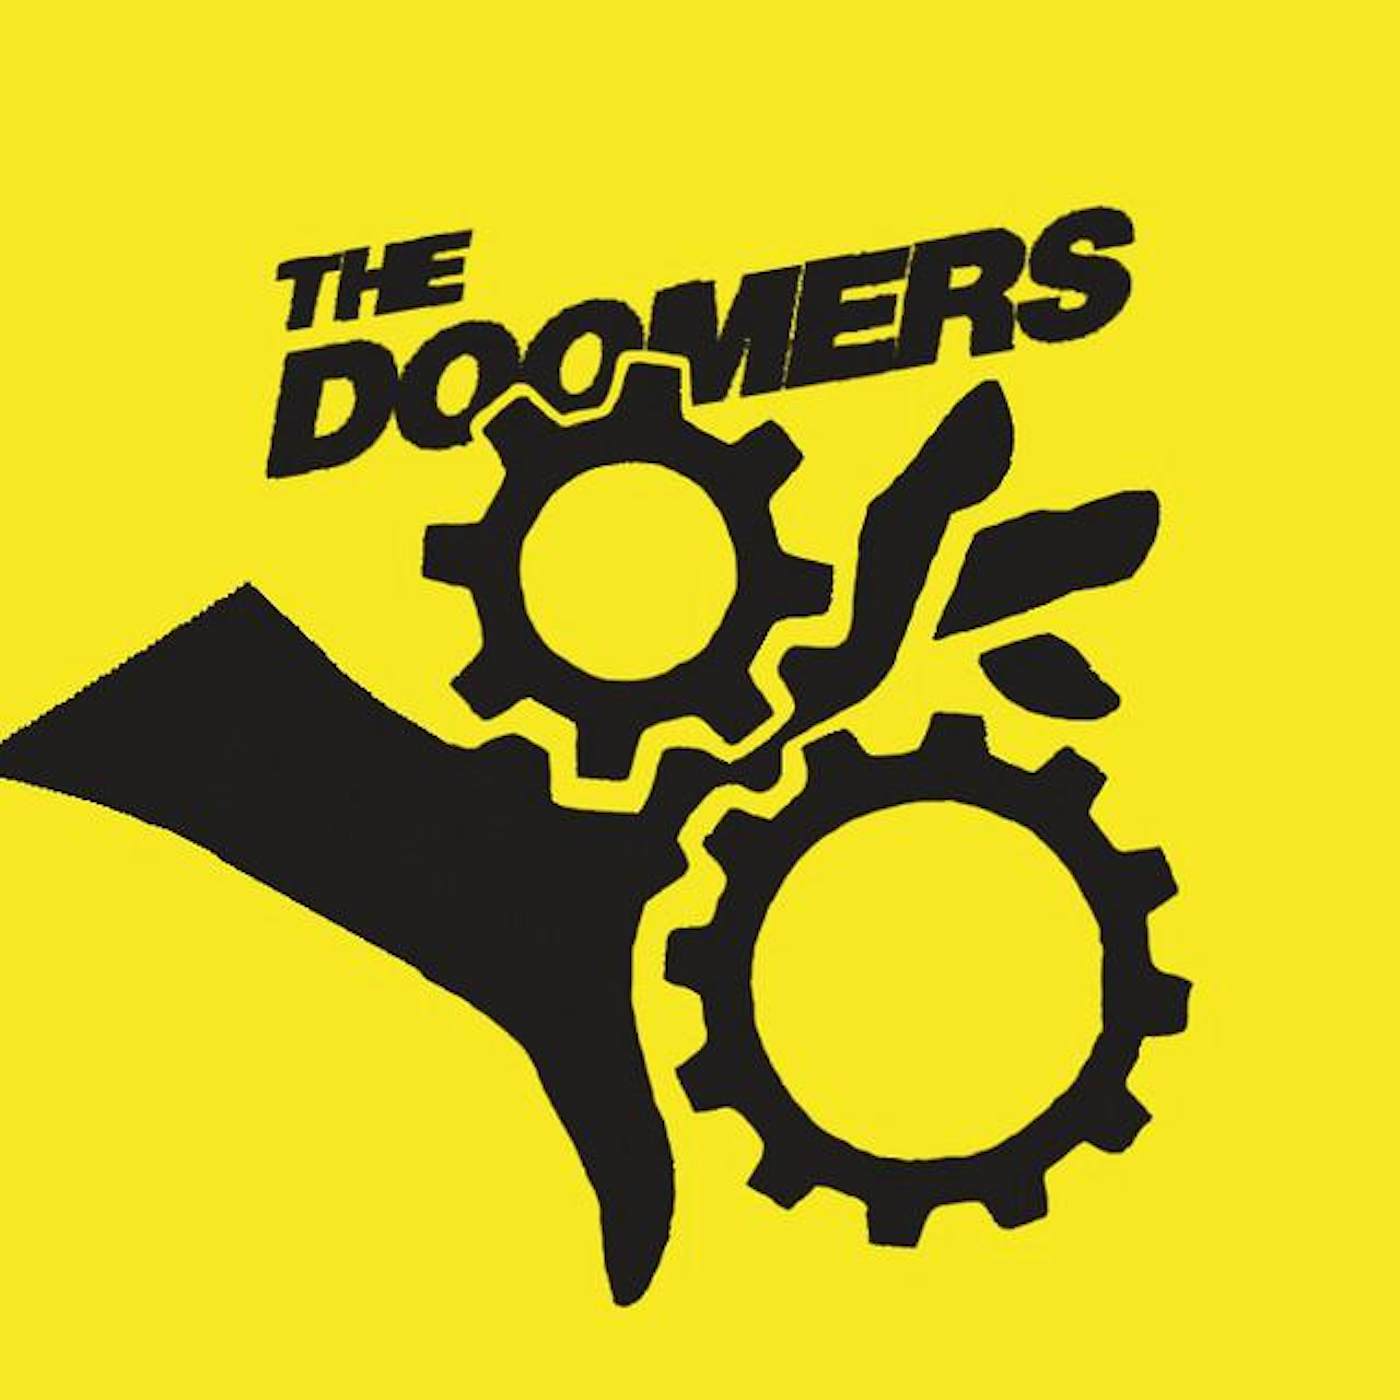 The Doomers